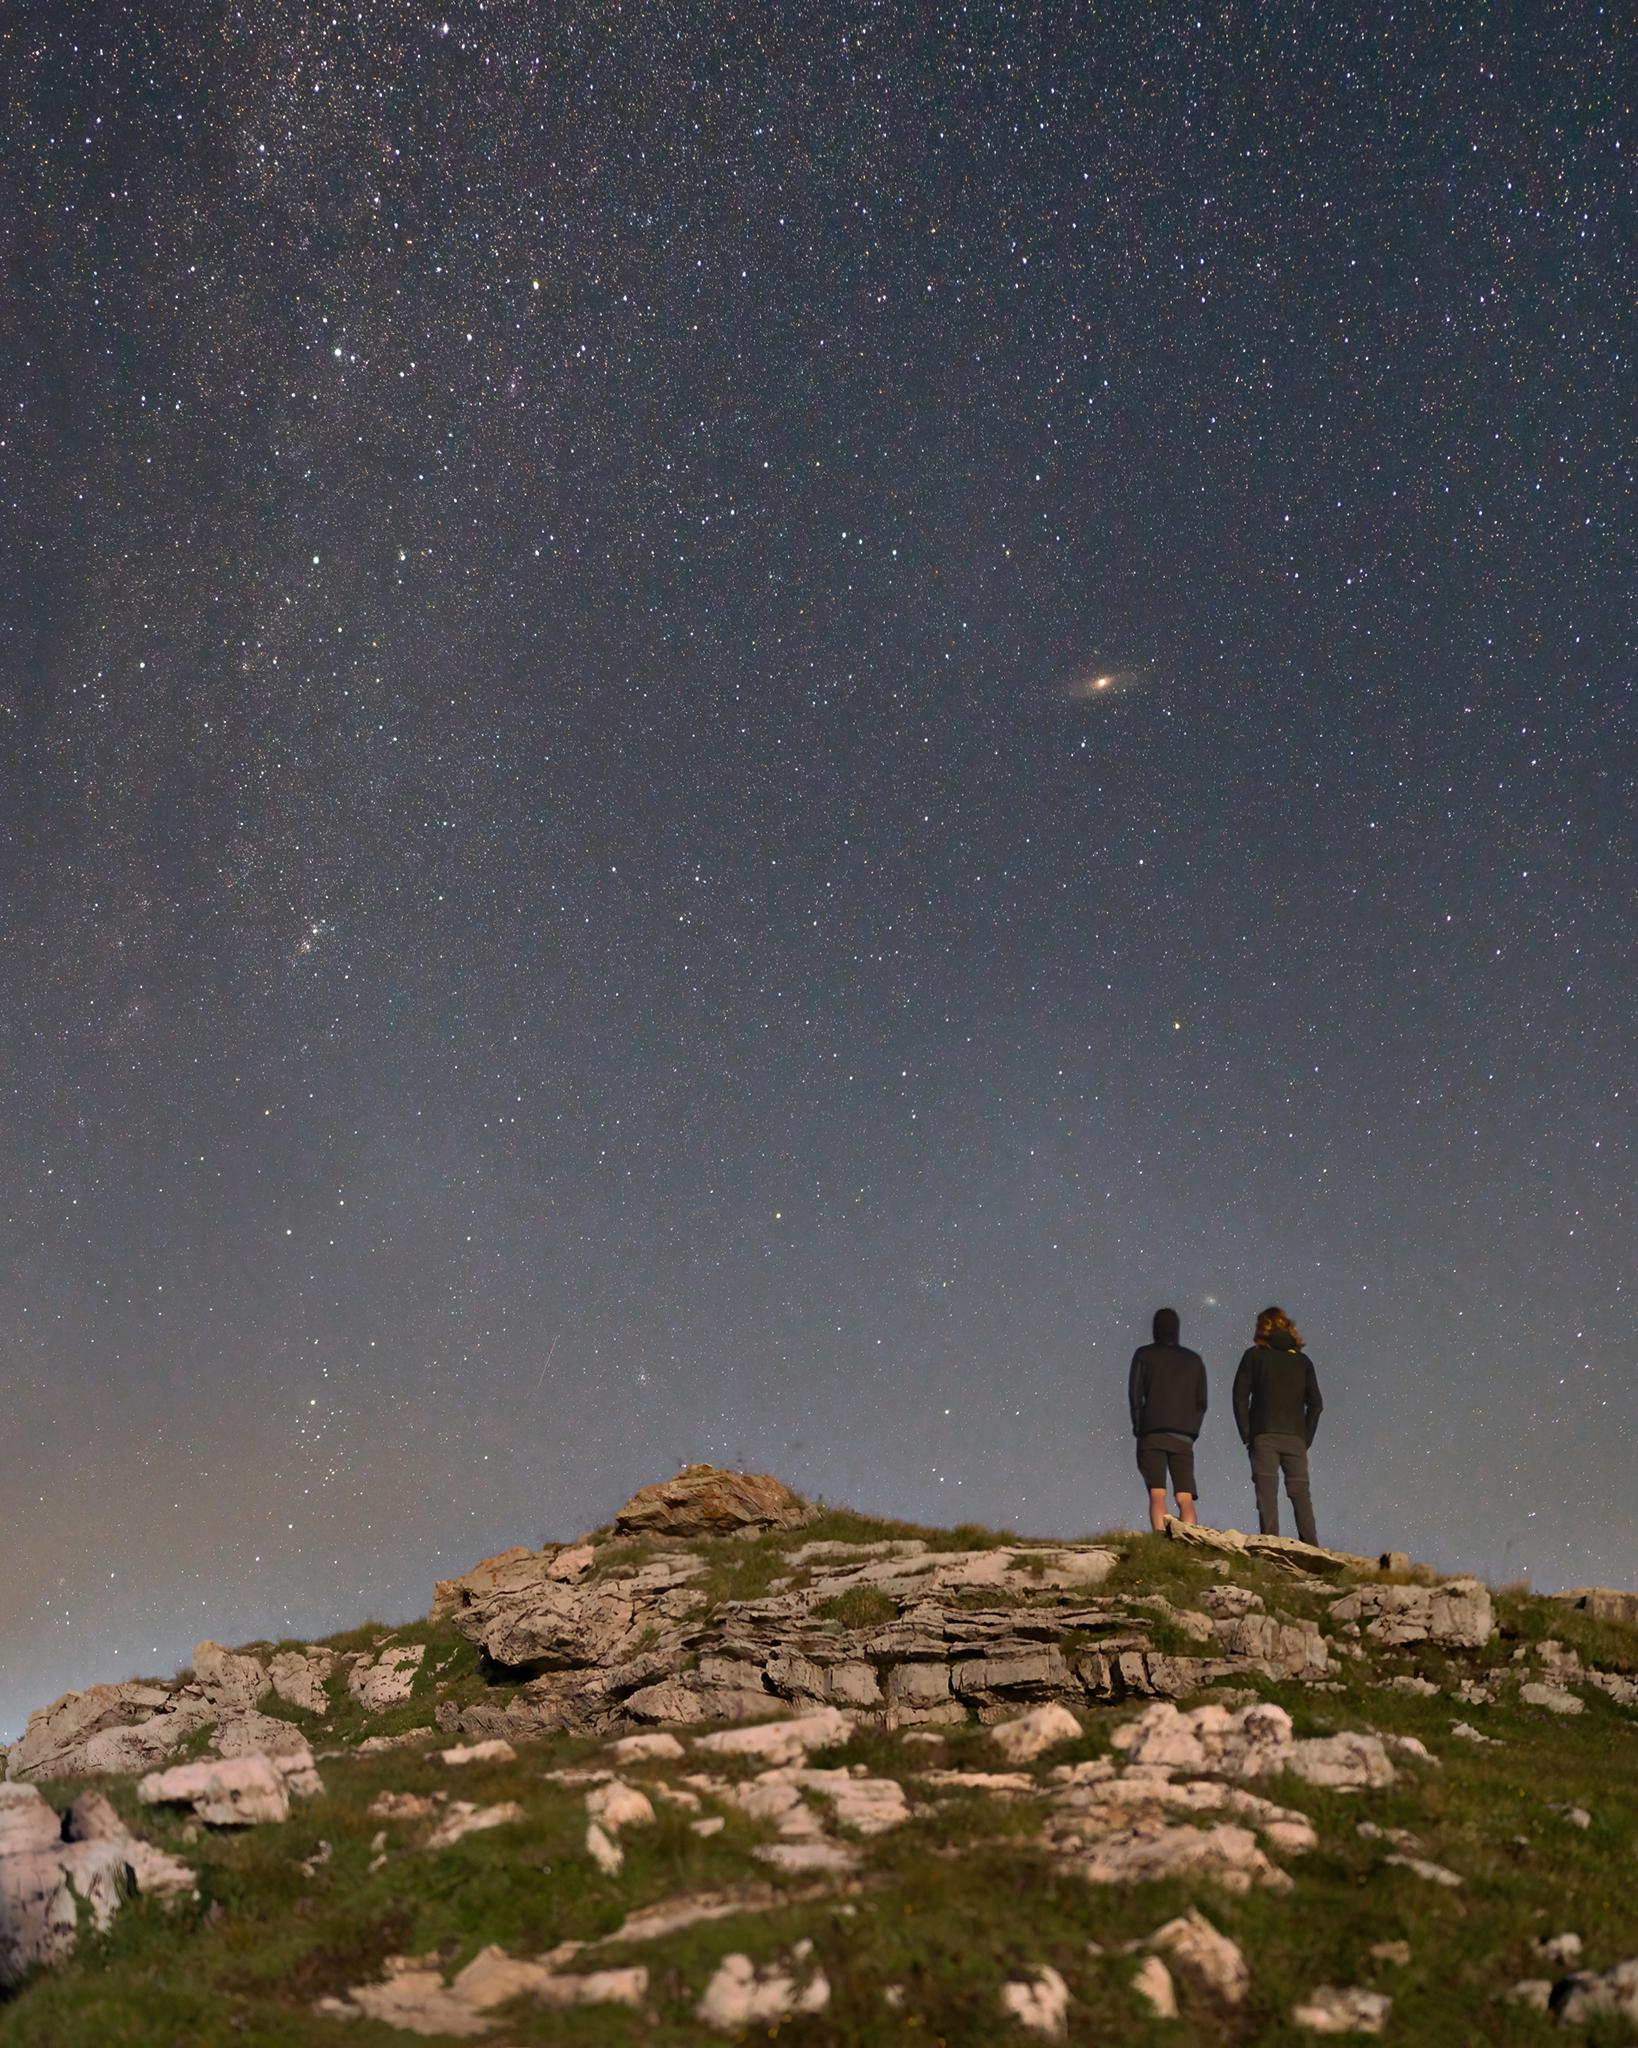 شخصان يقفان فوق تلّة بينما تسطع أمامهما نجوم الليل ويمتدّ مستوي درب التبّانة على طول يسار الصورة، وتظهر فوقهما مجرة أندروميدا بنواة ساطعة وبينهما مجرّة المثلّث.